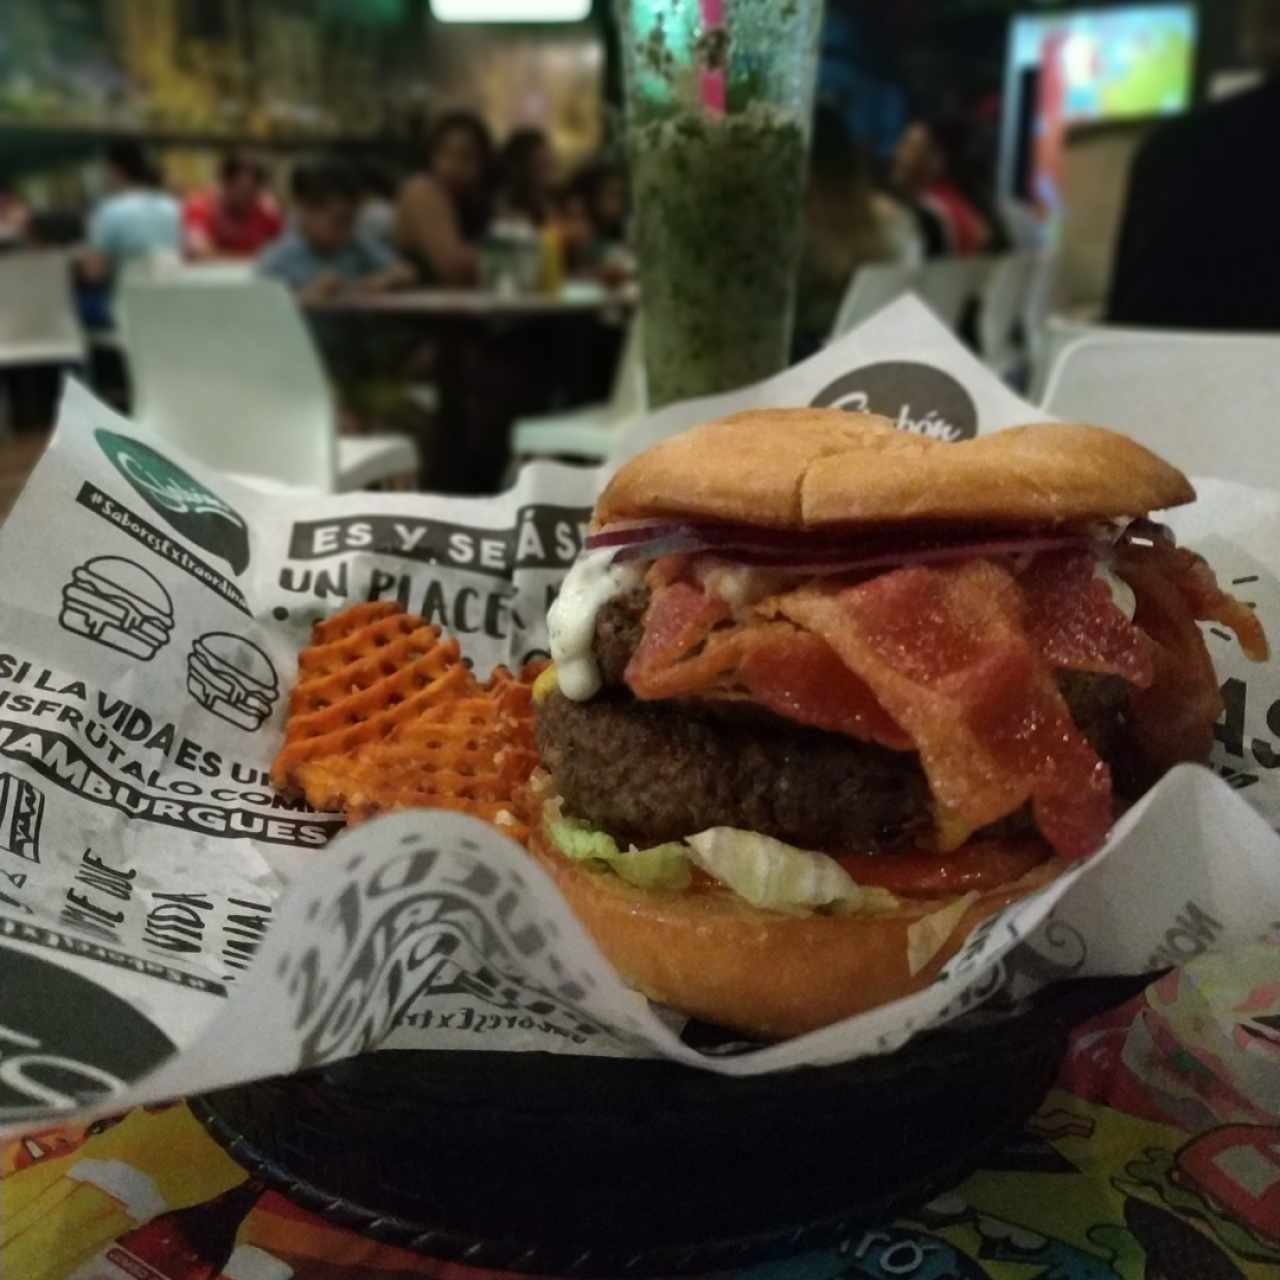 xxxl burger